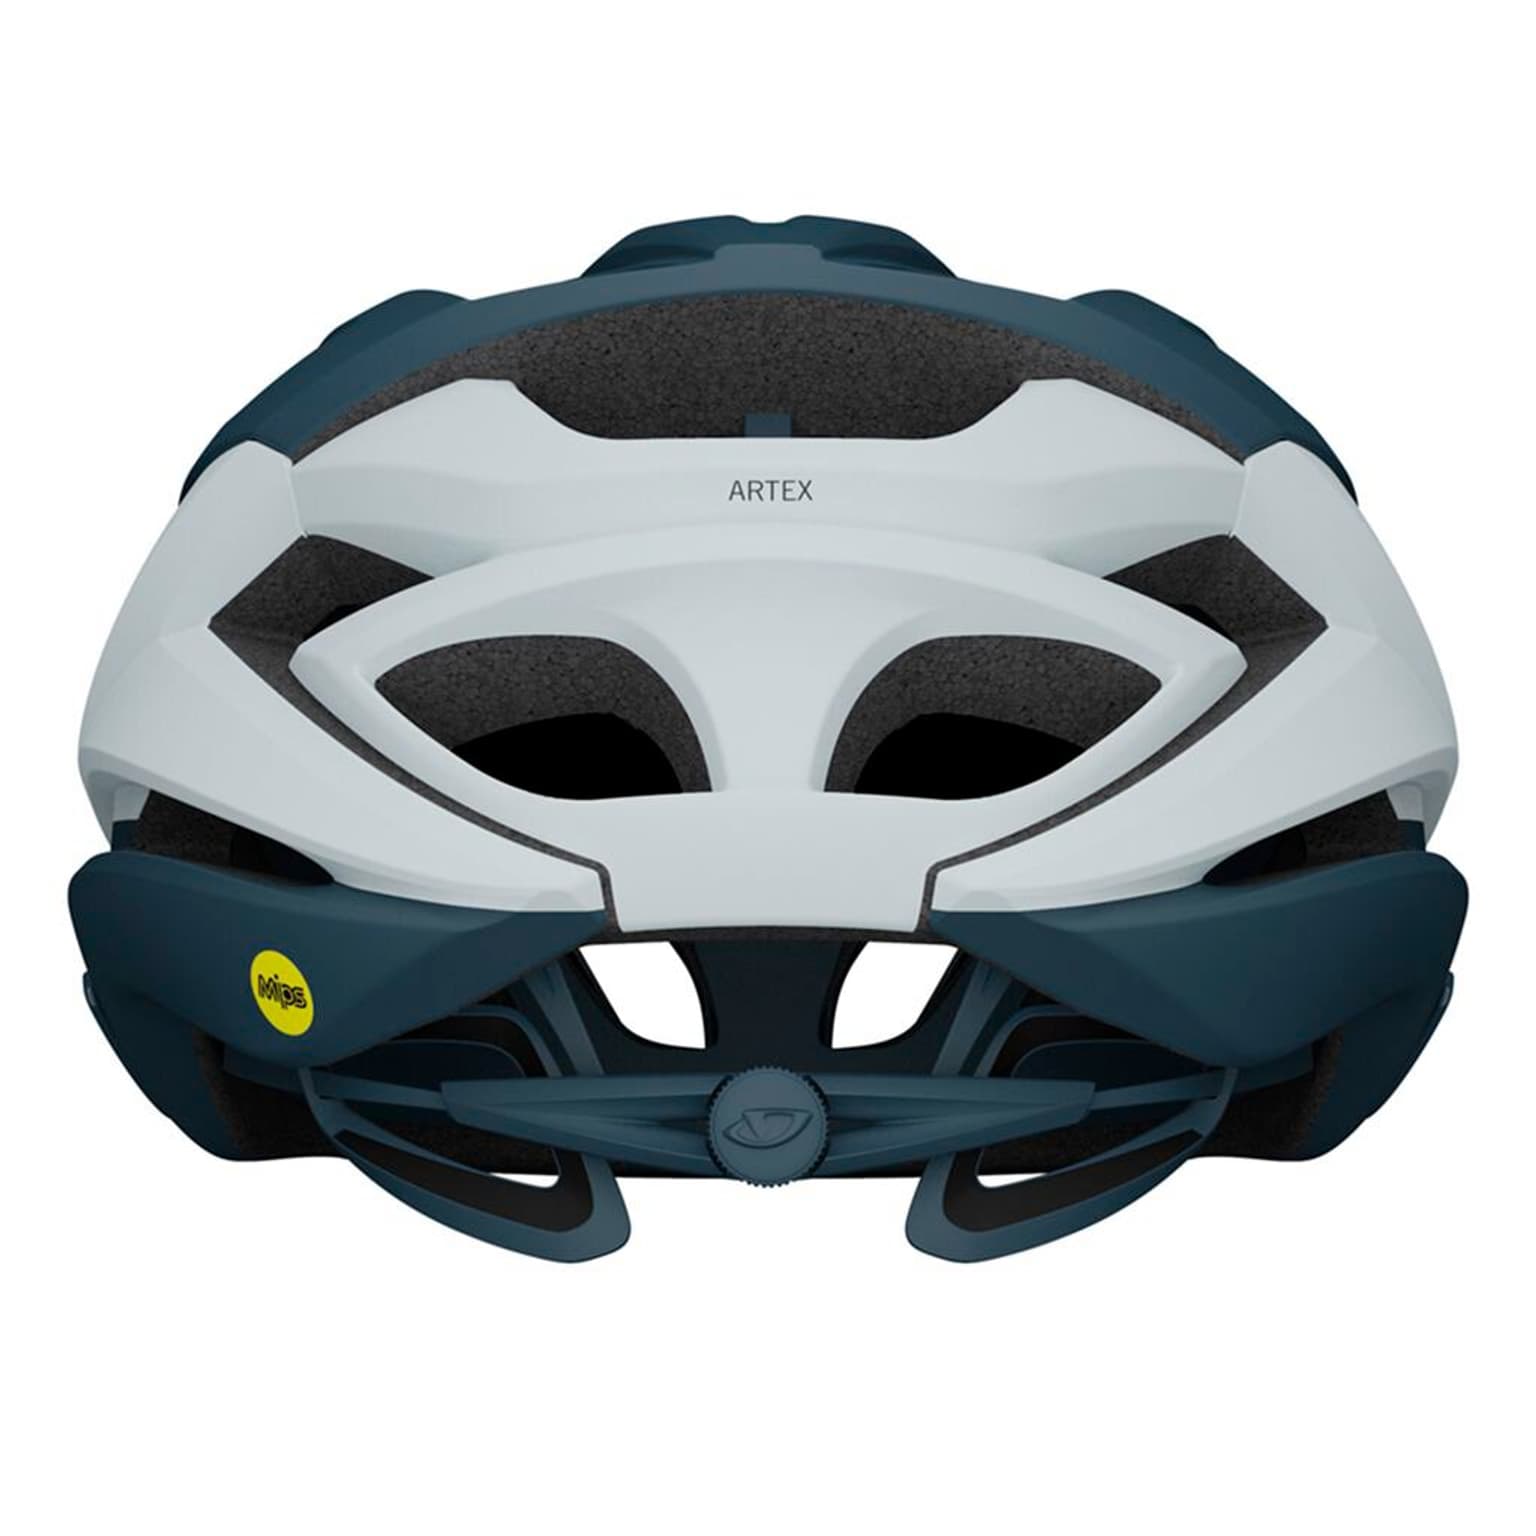 Giro Giro Artex MIPS Helmet Velohelm anthrazit 2